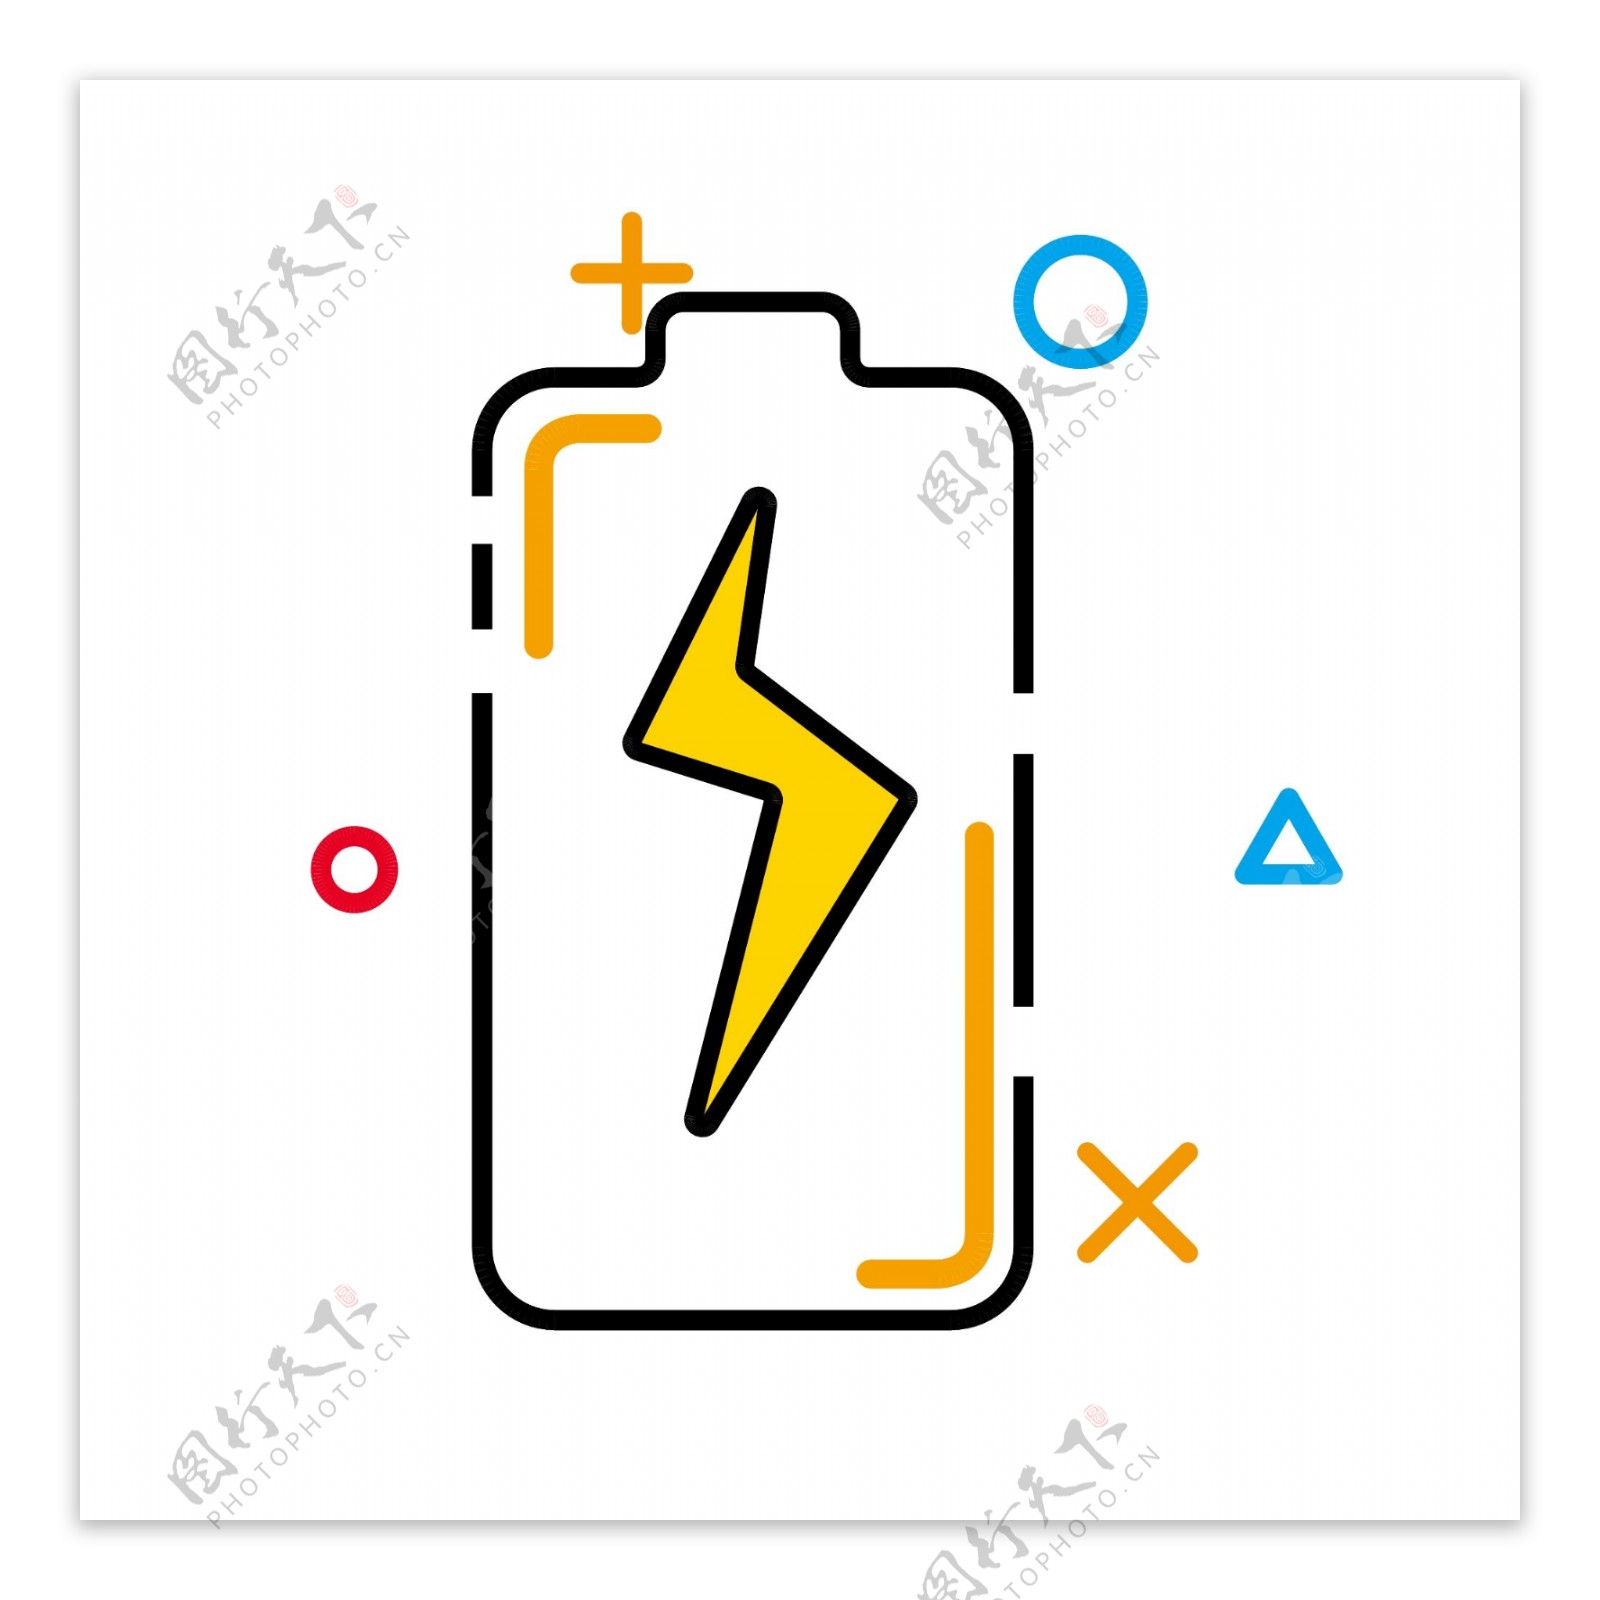 电池MEB图标闪电黄色商用元素